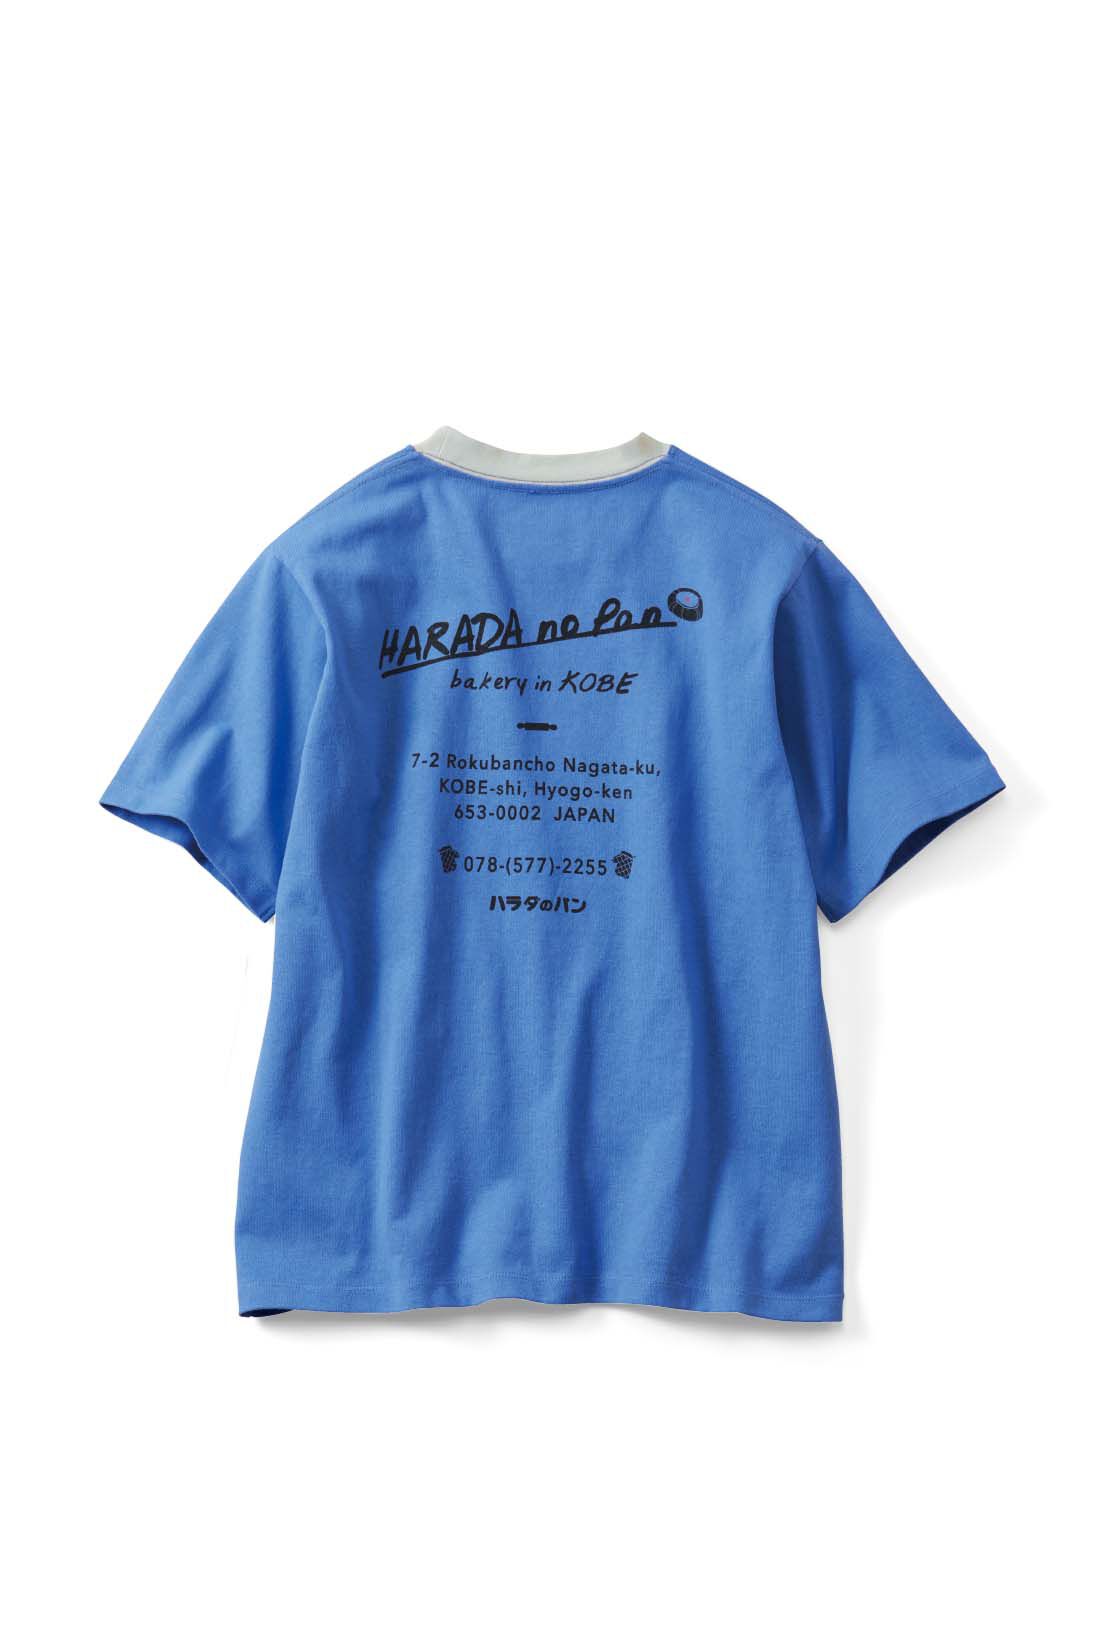 Real Stock|Live love cottonプロジェクト リブ イン コンフォート神戸のベーカリーハラダのパンさんとつくったオーガニックコットンのレトロかわいいTシャツ〈ジェイブルー〉|back